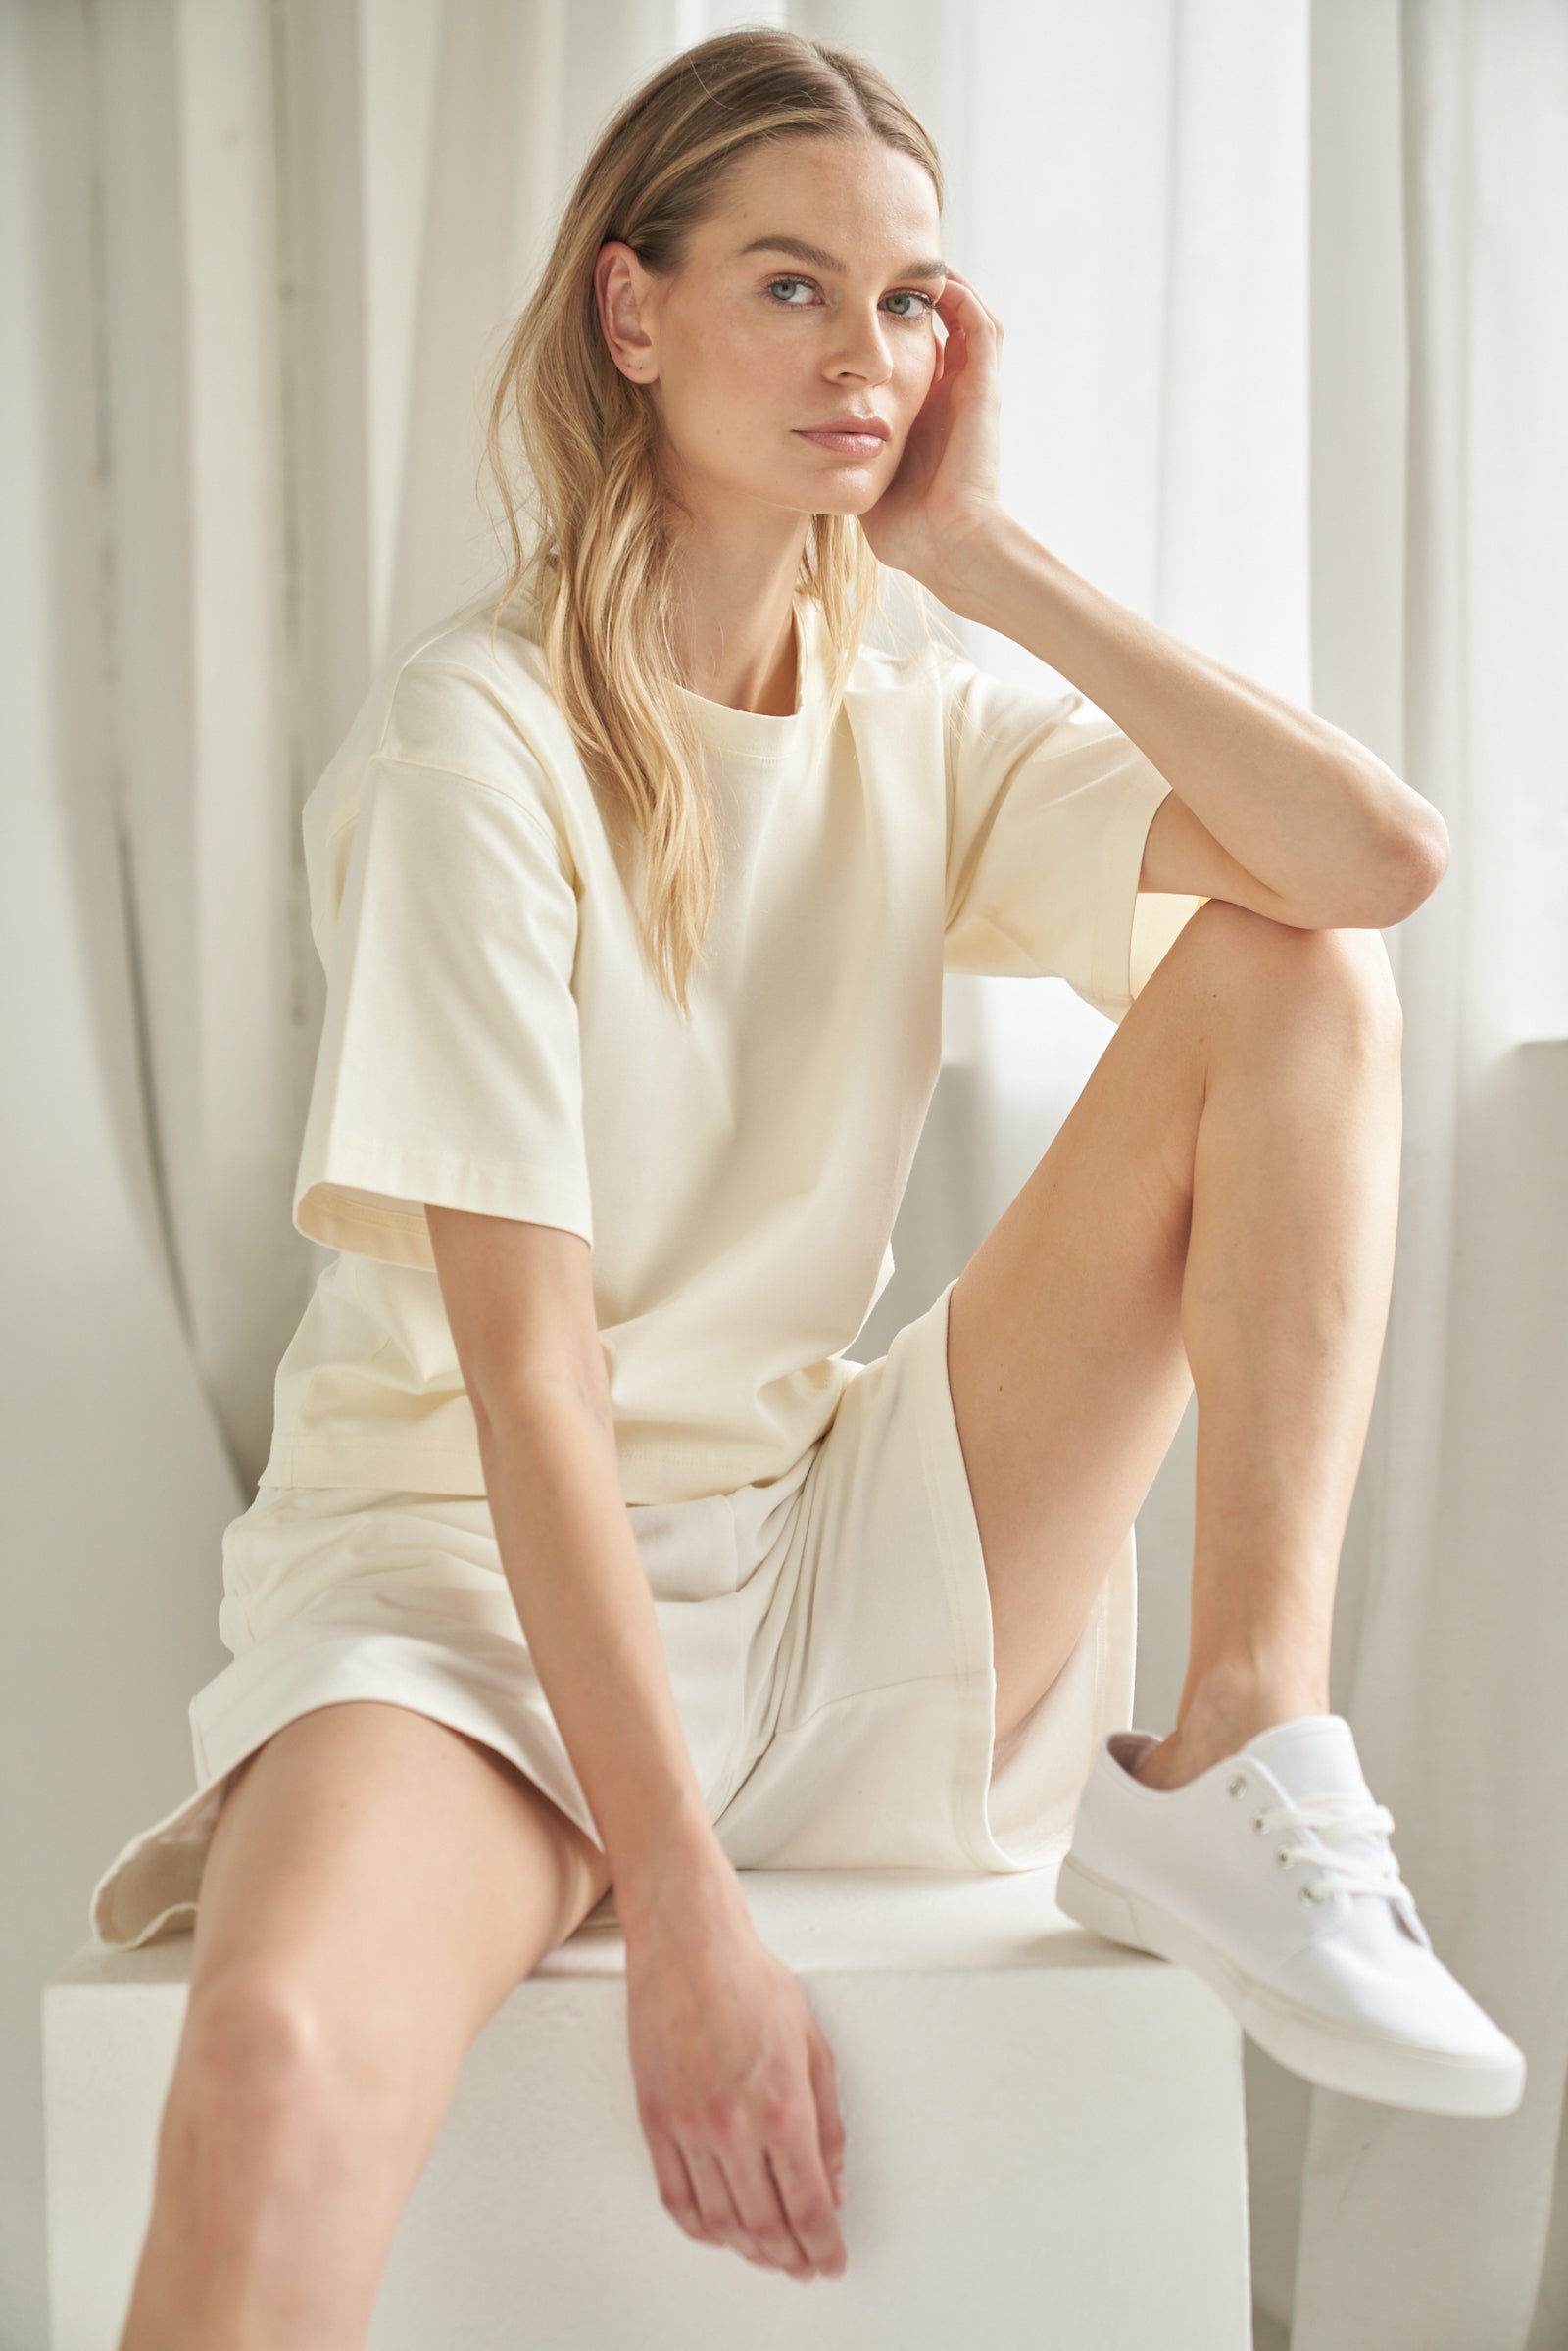 T-shirt aus Bio-Baumwolle in der Farbe cremeweiss. Das T-Shirt wird von einem blonden Model in sitzender Haltung getragen und zeigt das Outfit von vorne.